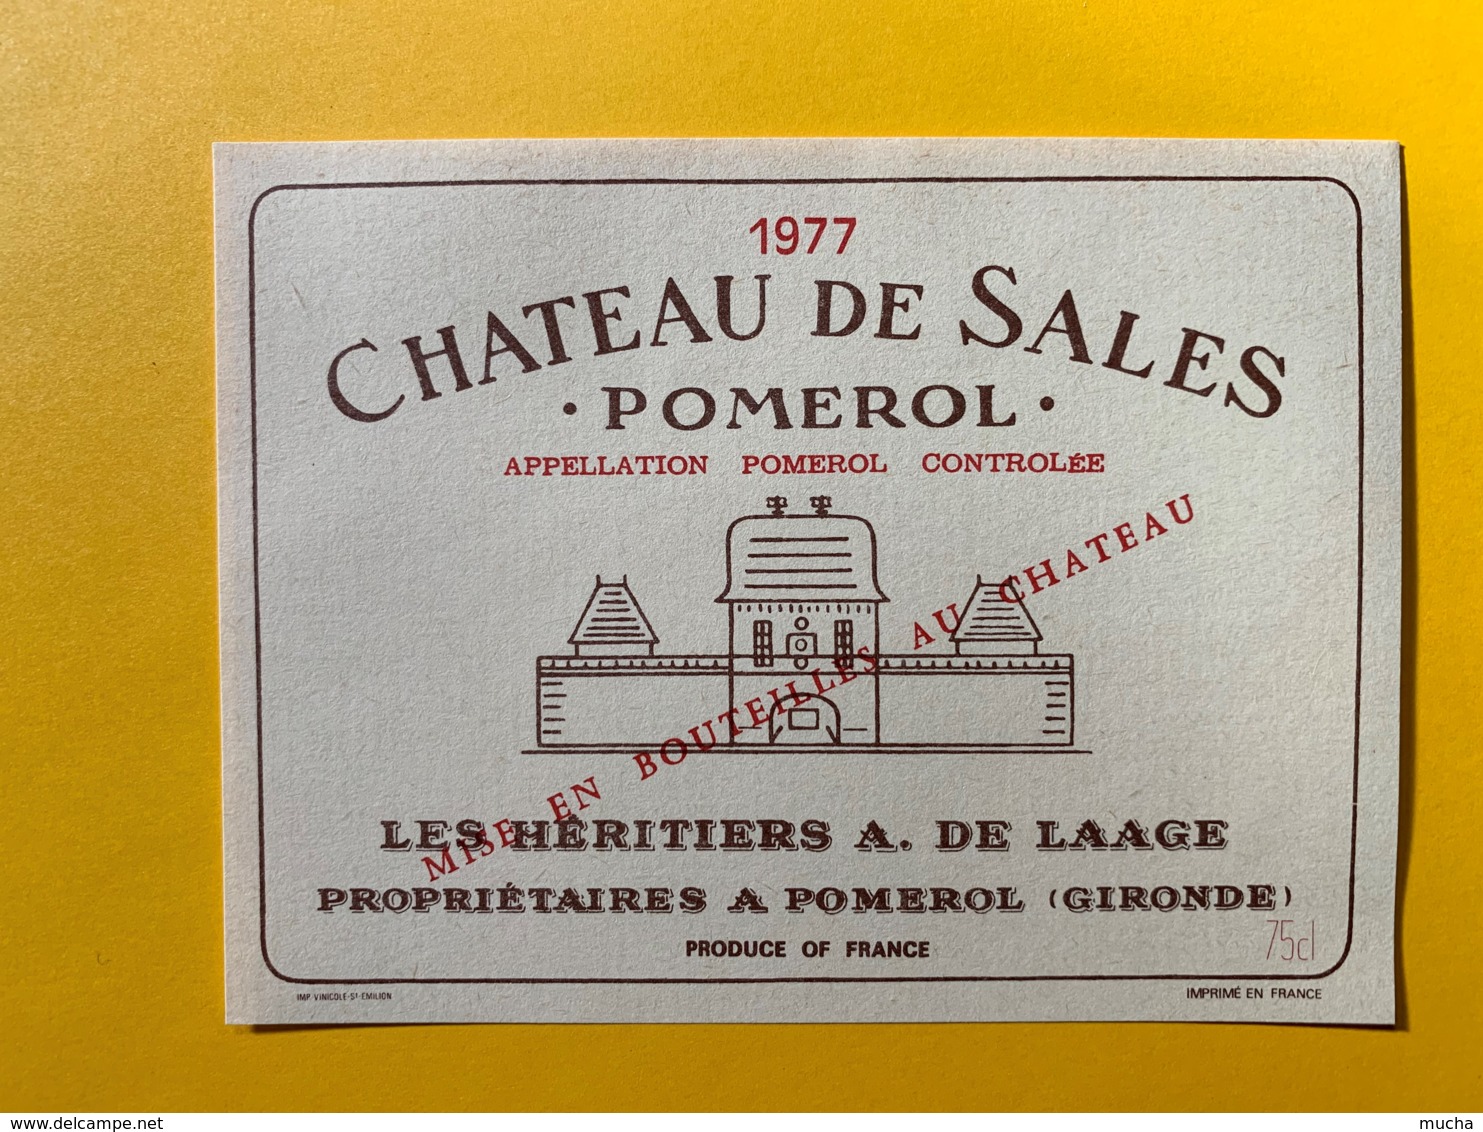 9856 - Château De Sales 1977 Pomerol - Bordeaux